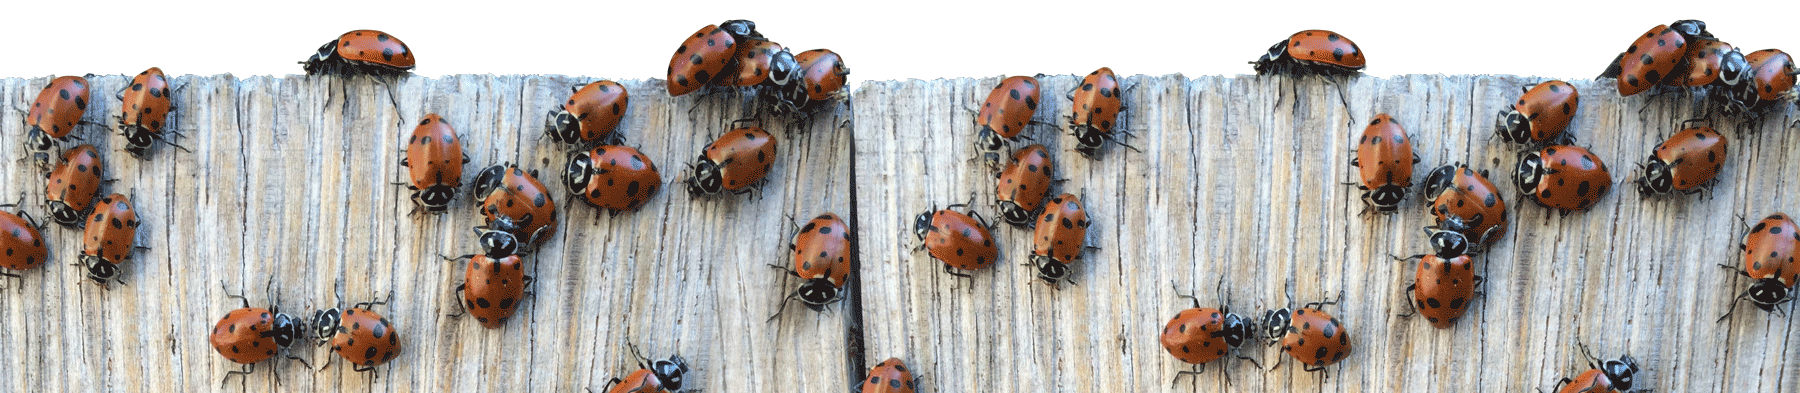 Ladybugs on fence